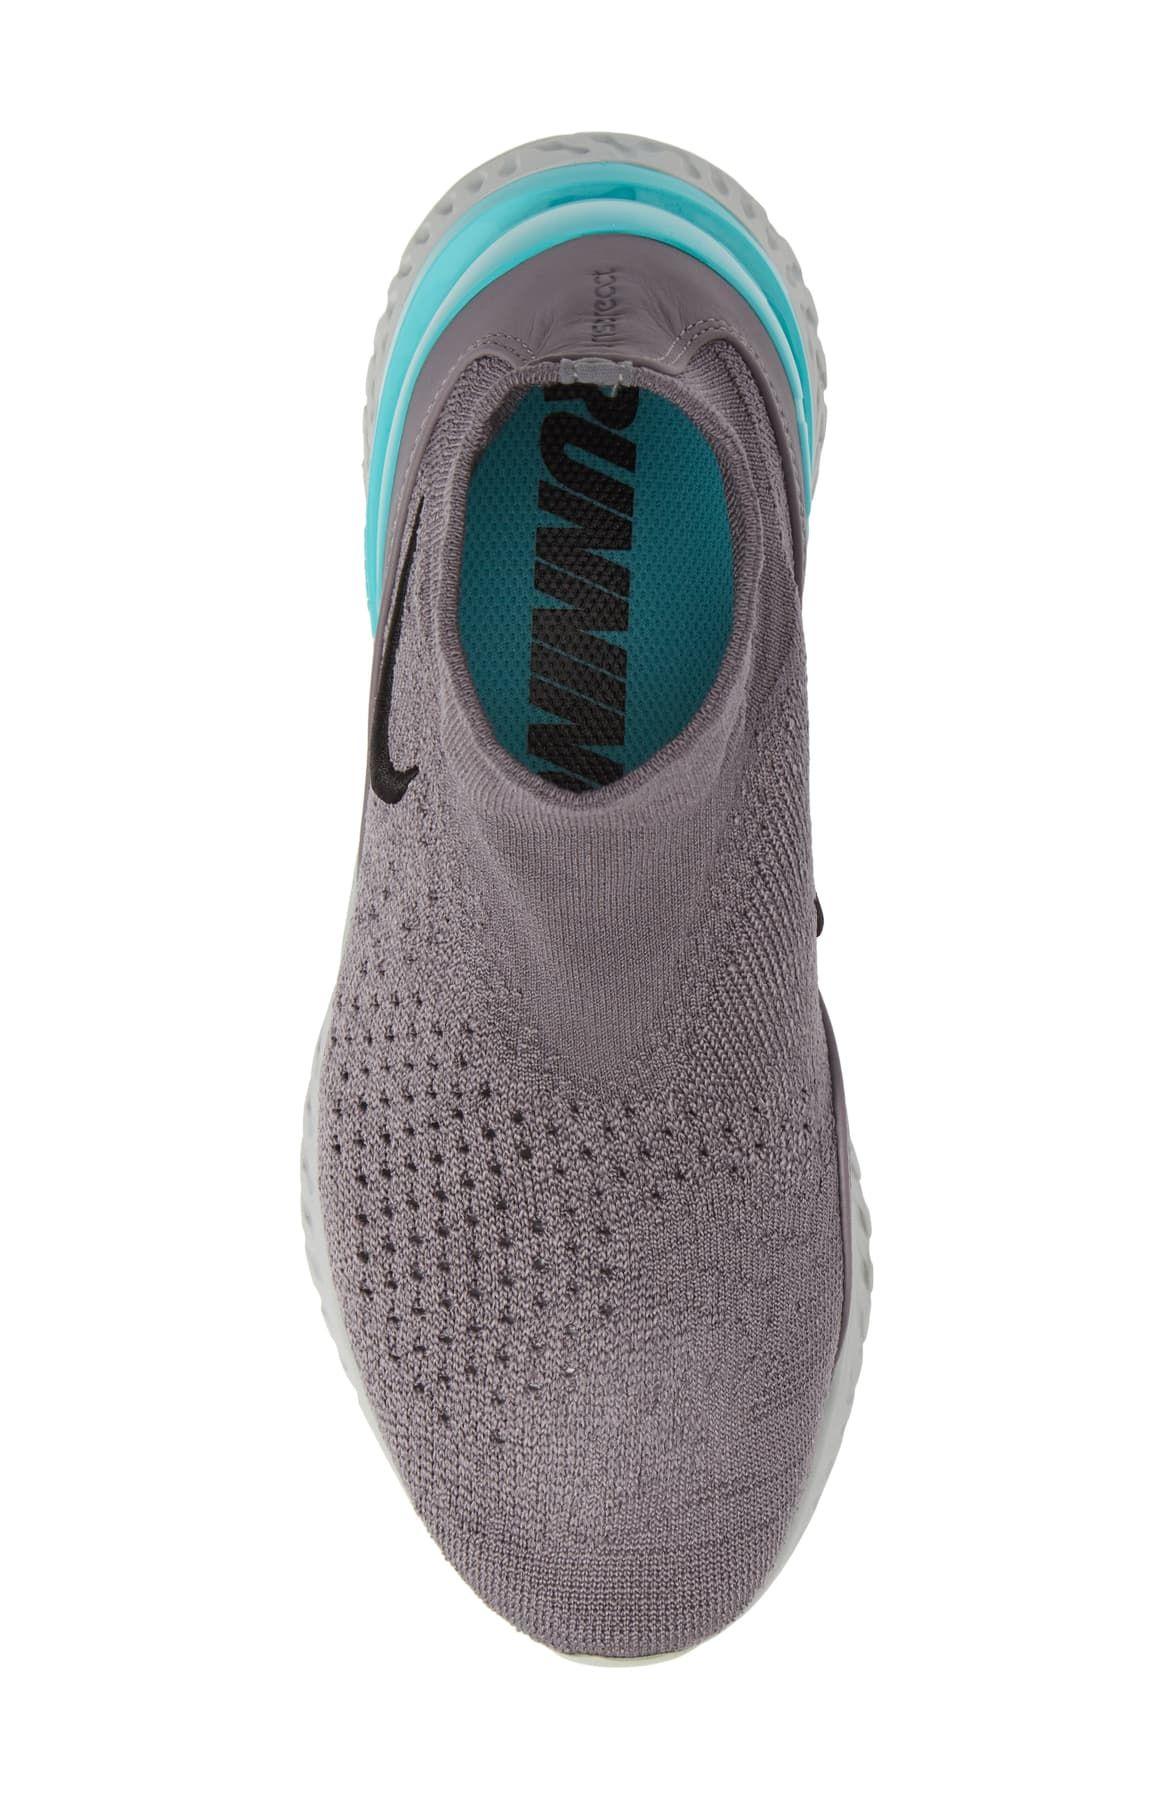 Nike Rise React Flyknit Sock Sneaker for Men | Lyst